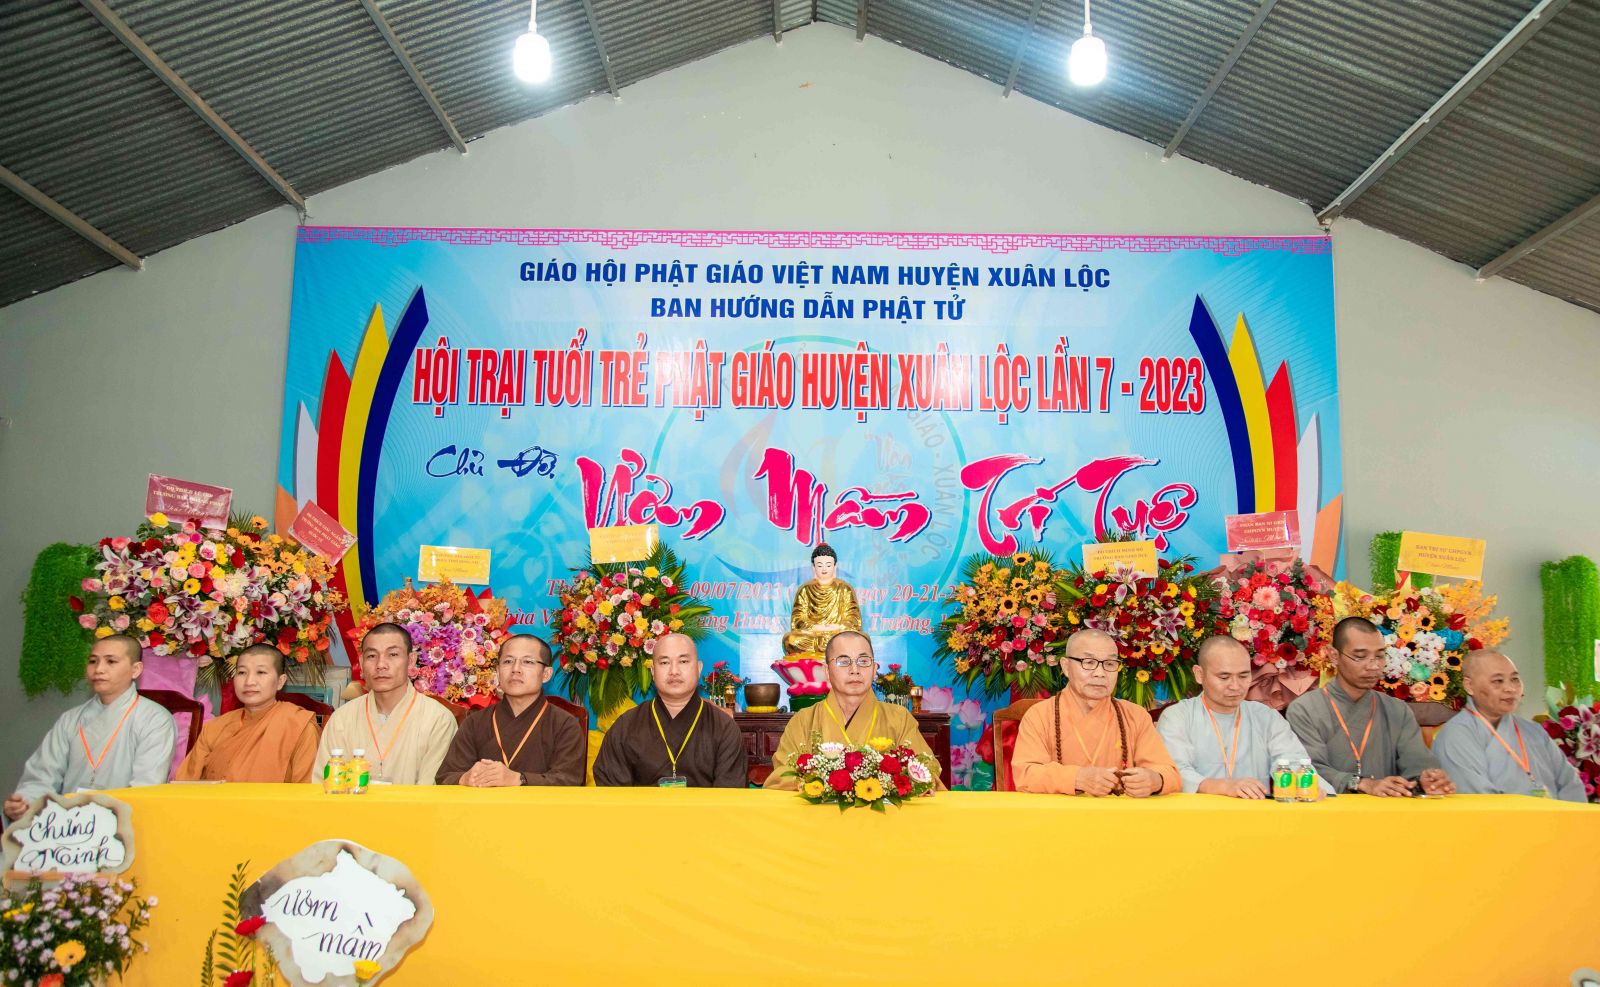 Đồng Nai: Lễ Bế mạc Hội trại tuổi trẻ Phật giáo huyện Xuân Lộc, chủ đề: “Ươm mầm trí tuệ” lần 7, năm 2023